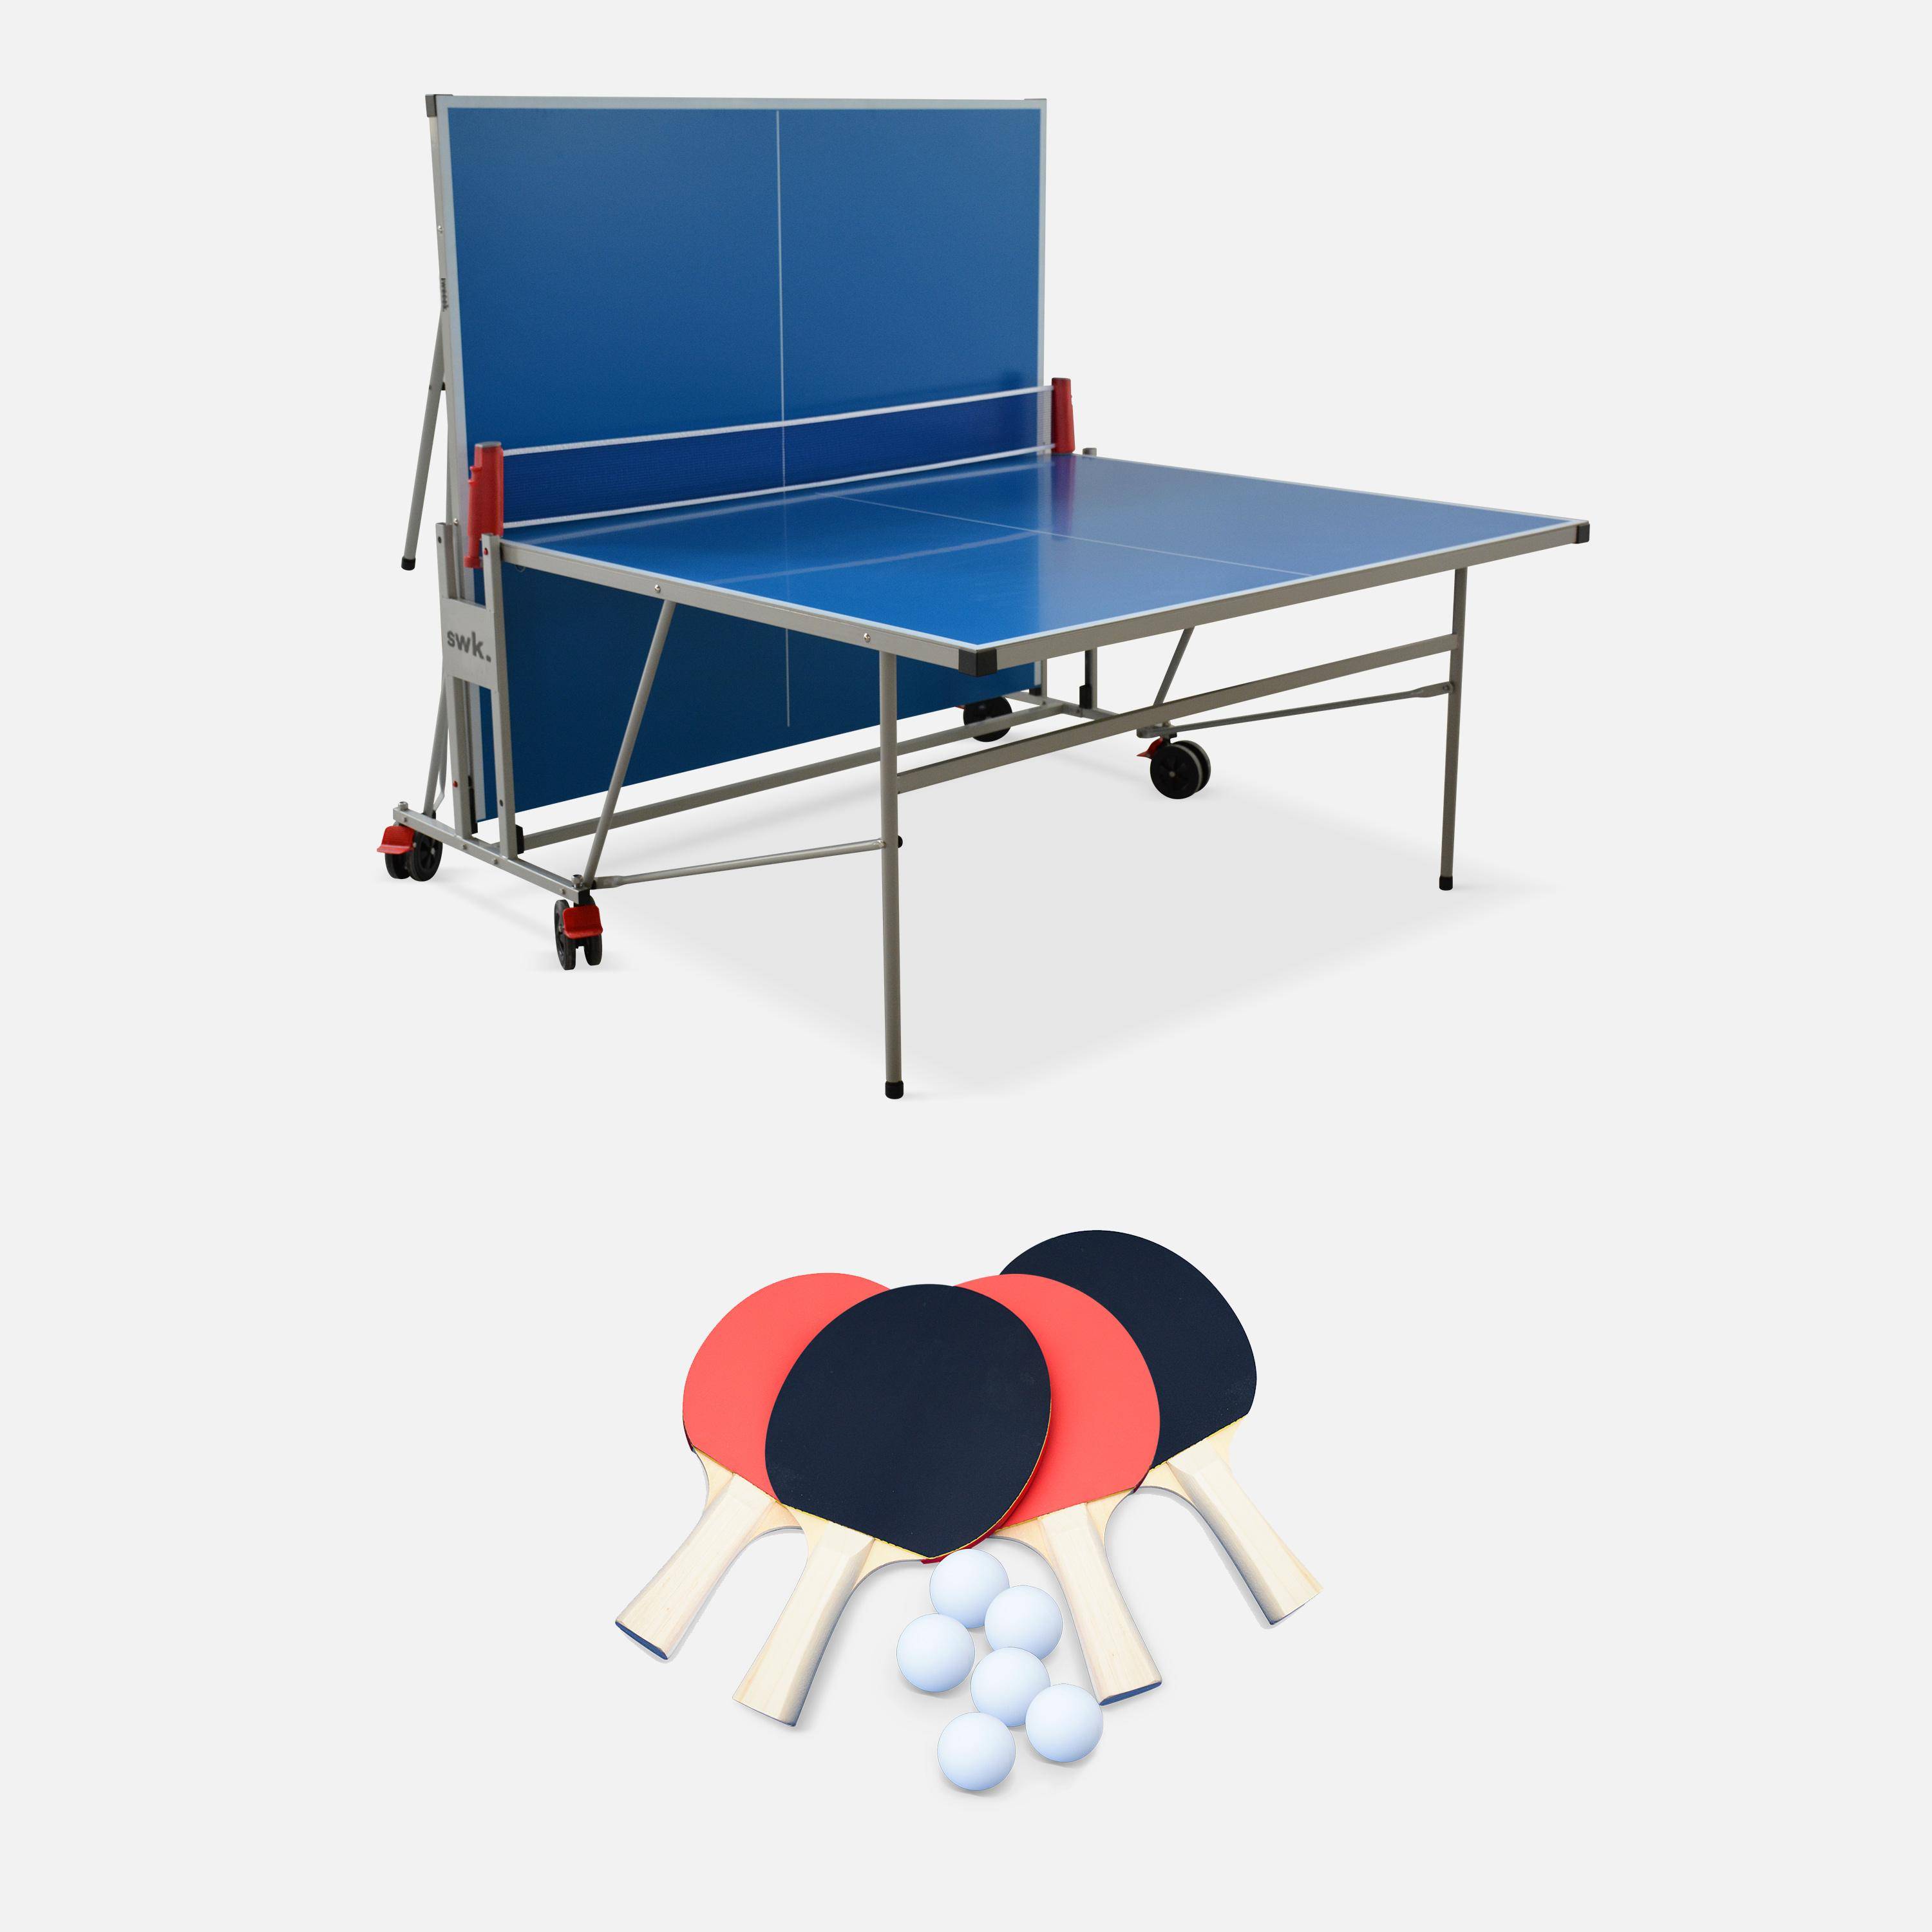 Table de ping pong OUTDOOR bleue - table pliable avec 4 raquettes et 6 balles, pour utilisation extérieure, sport tennis de table,sweeek,Photo4